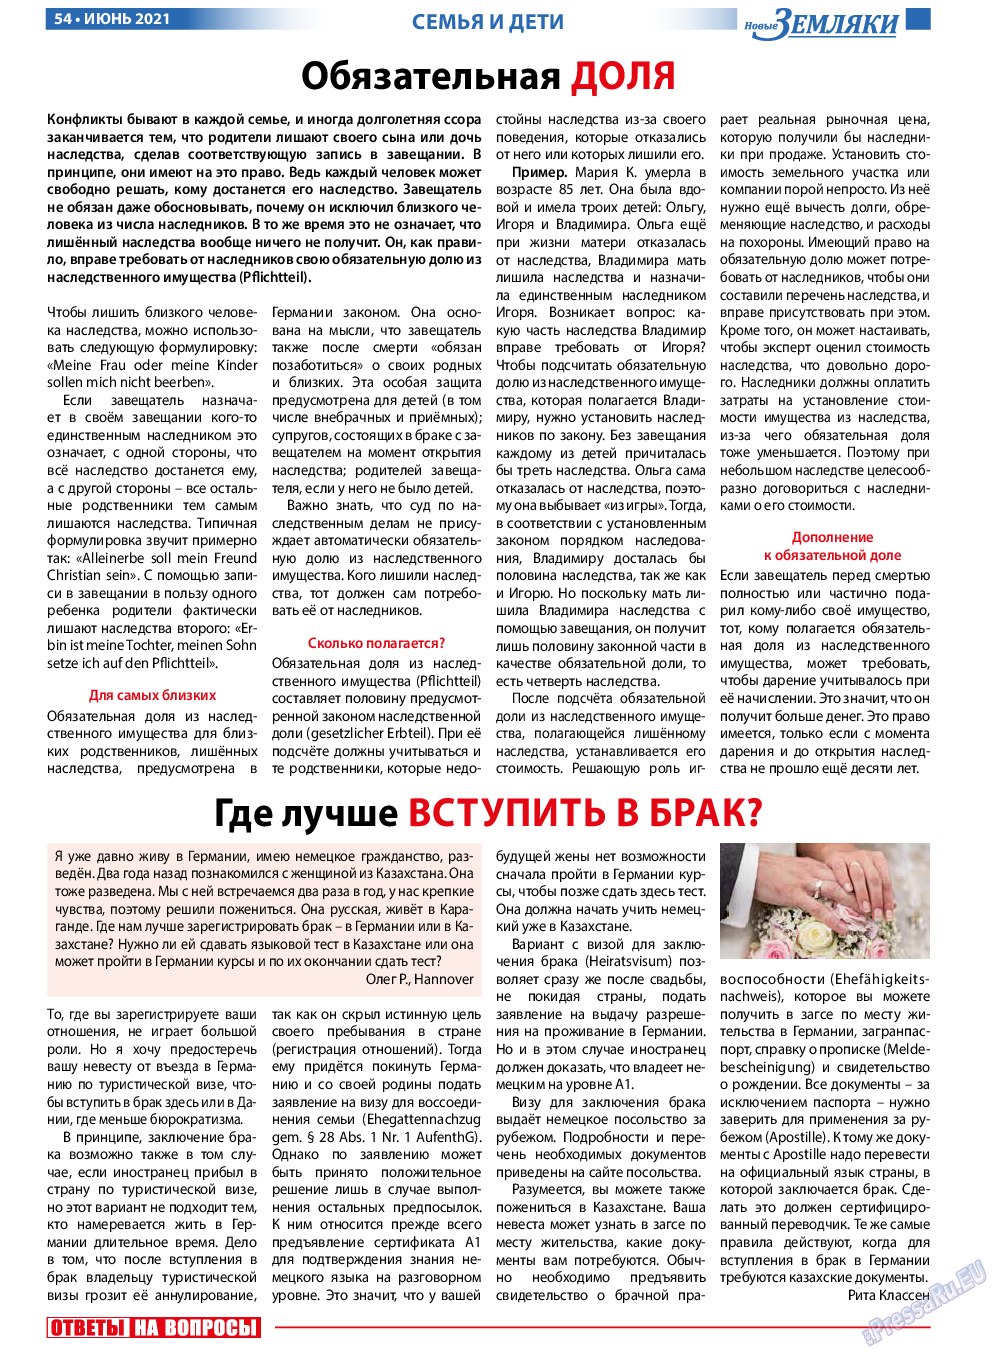 Новые Земляки, газета. 2021 №6 стр.54